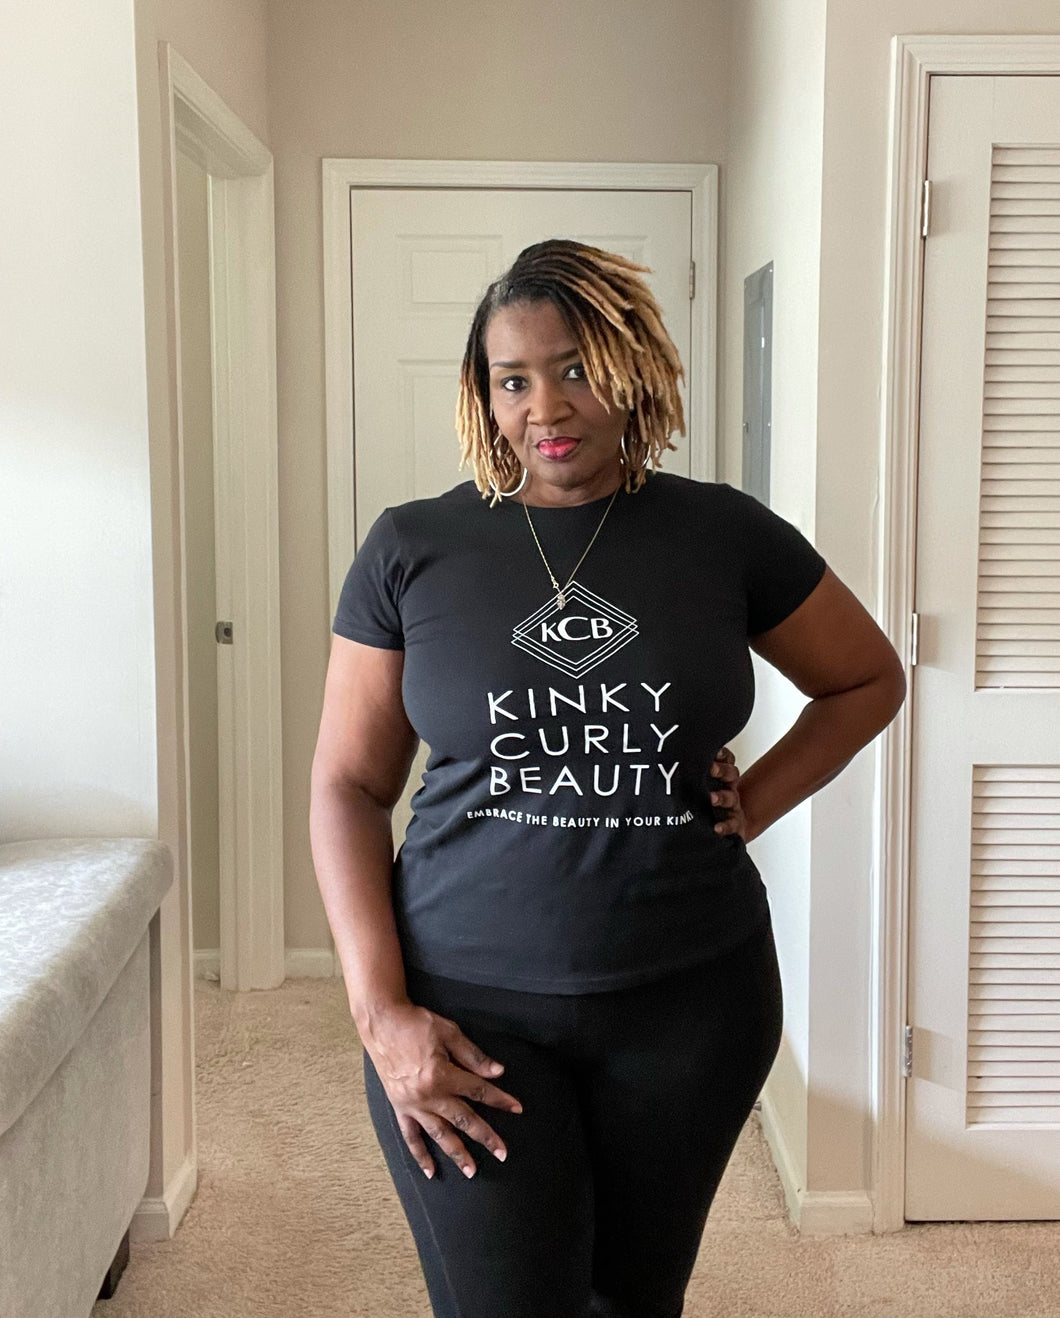 The Kinky Curly Beauty Tee